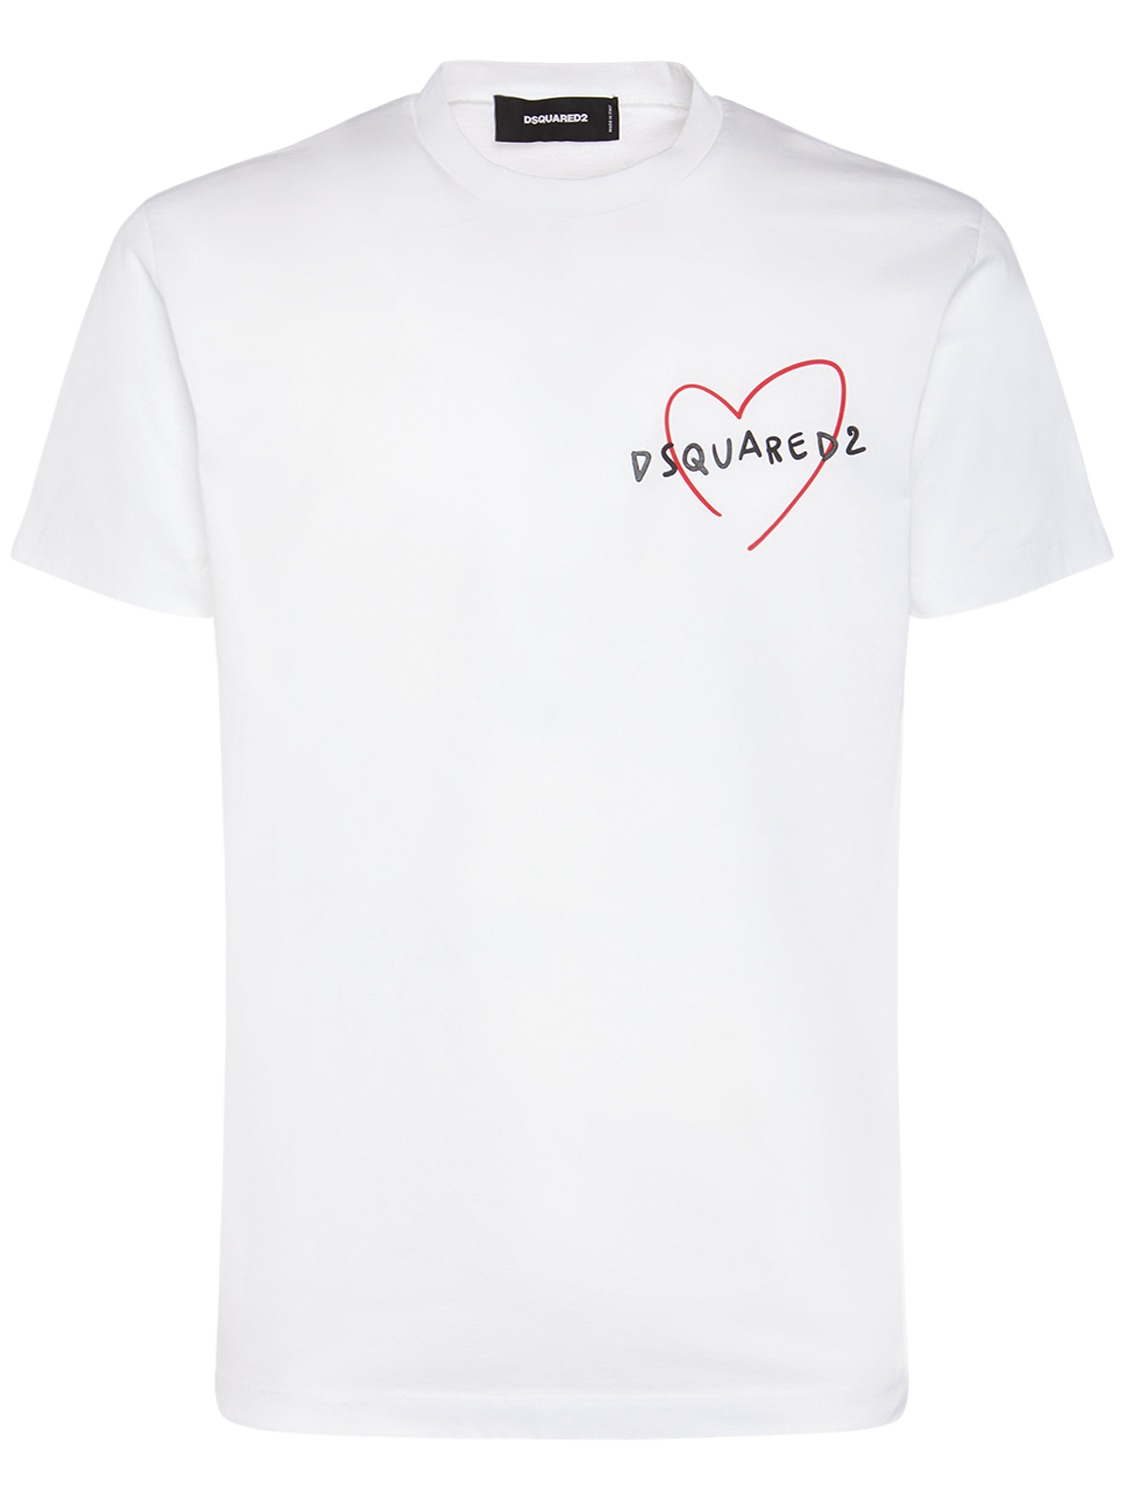 T-shirt En Jersey De Coton Imprimé Logo - DSQUARED2 - Modalova